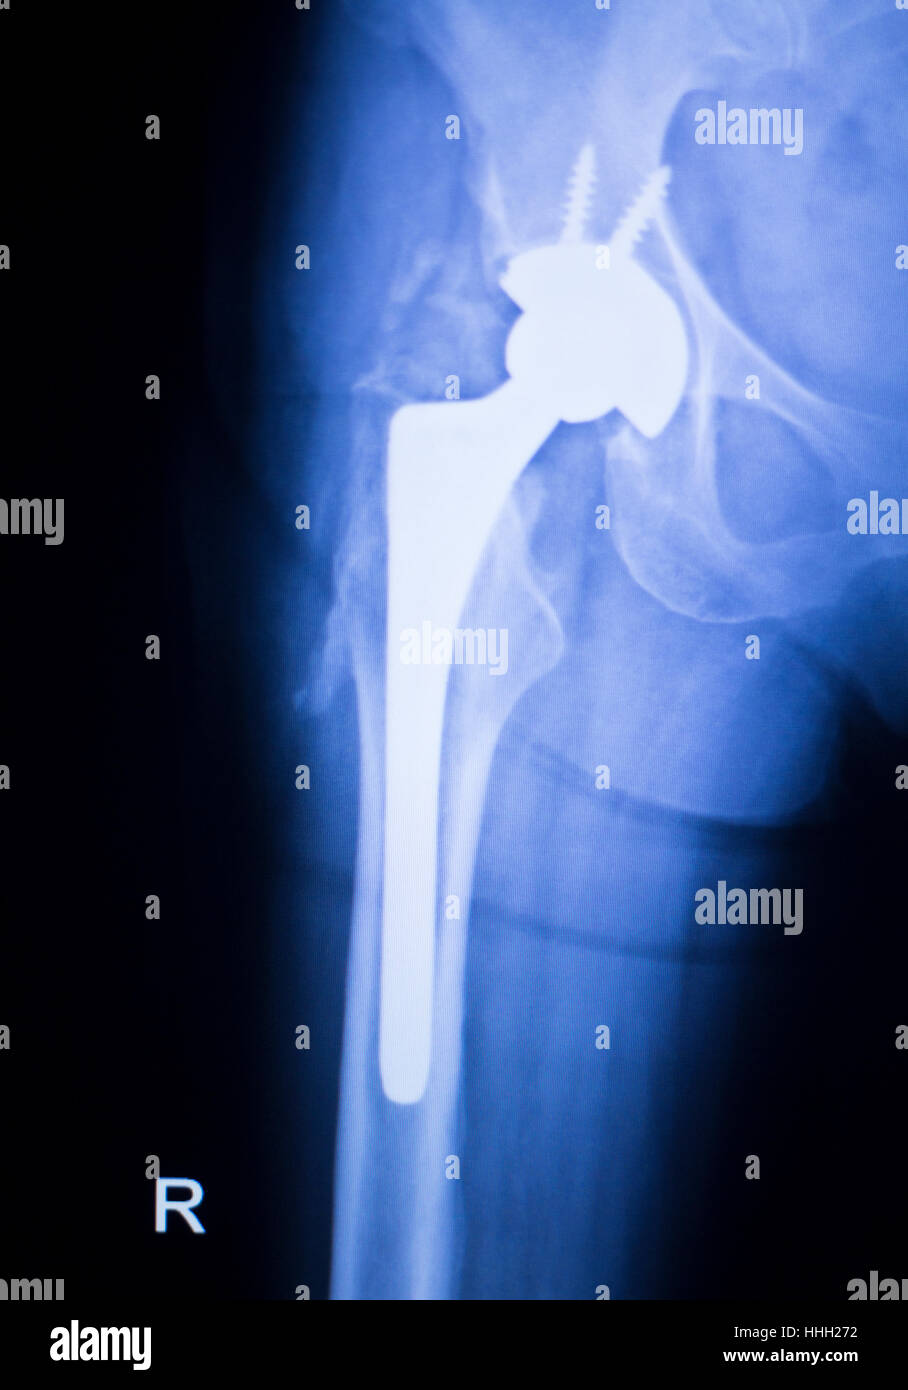 Shoulder Orthopedics Implant Xray Stock Photo C Edwardolive 118152216